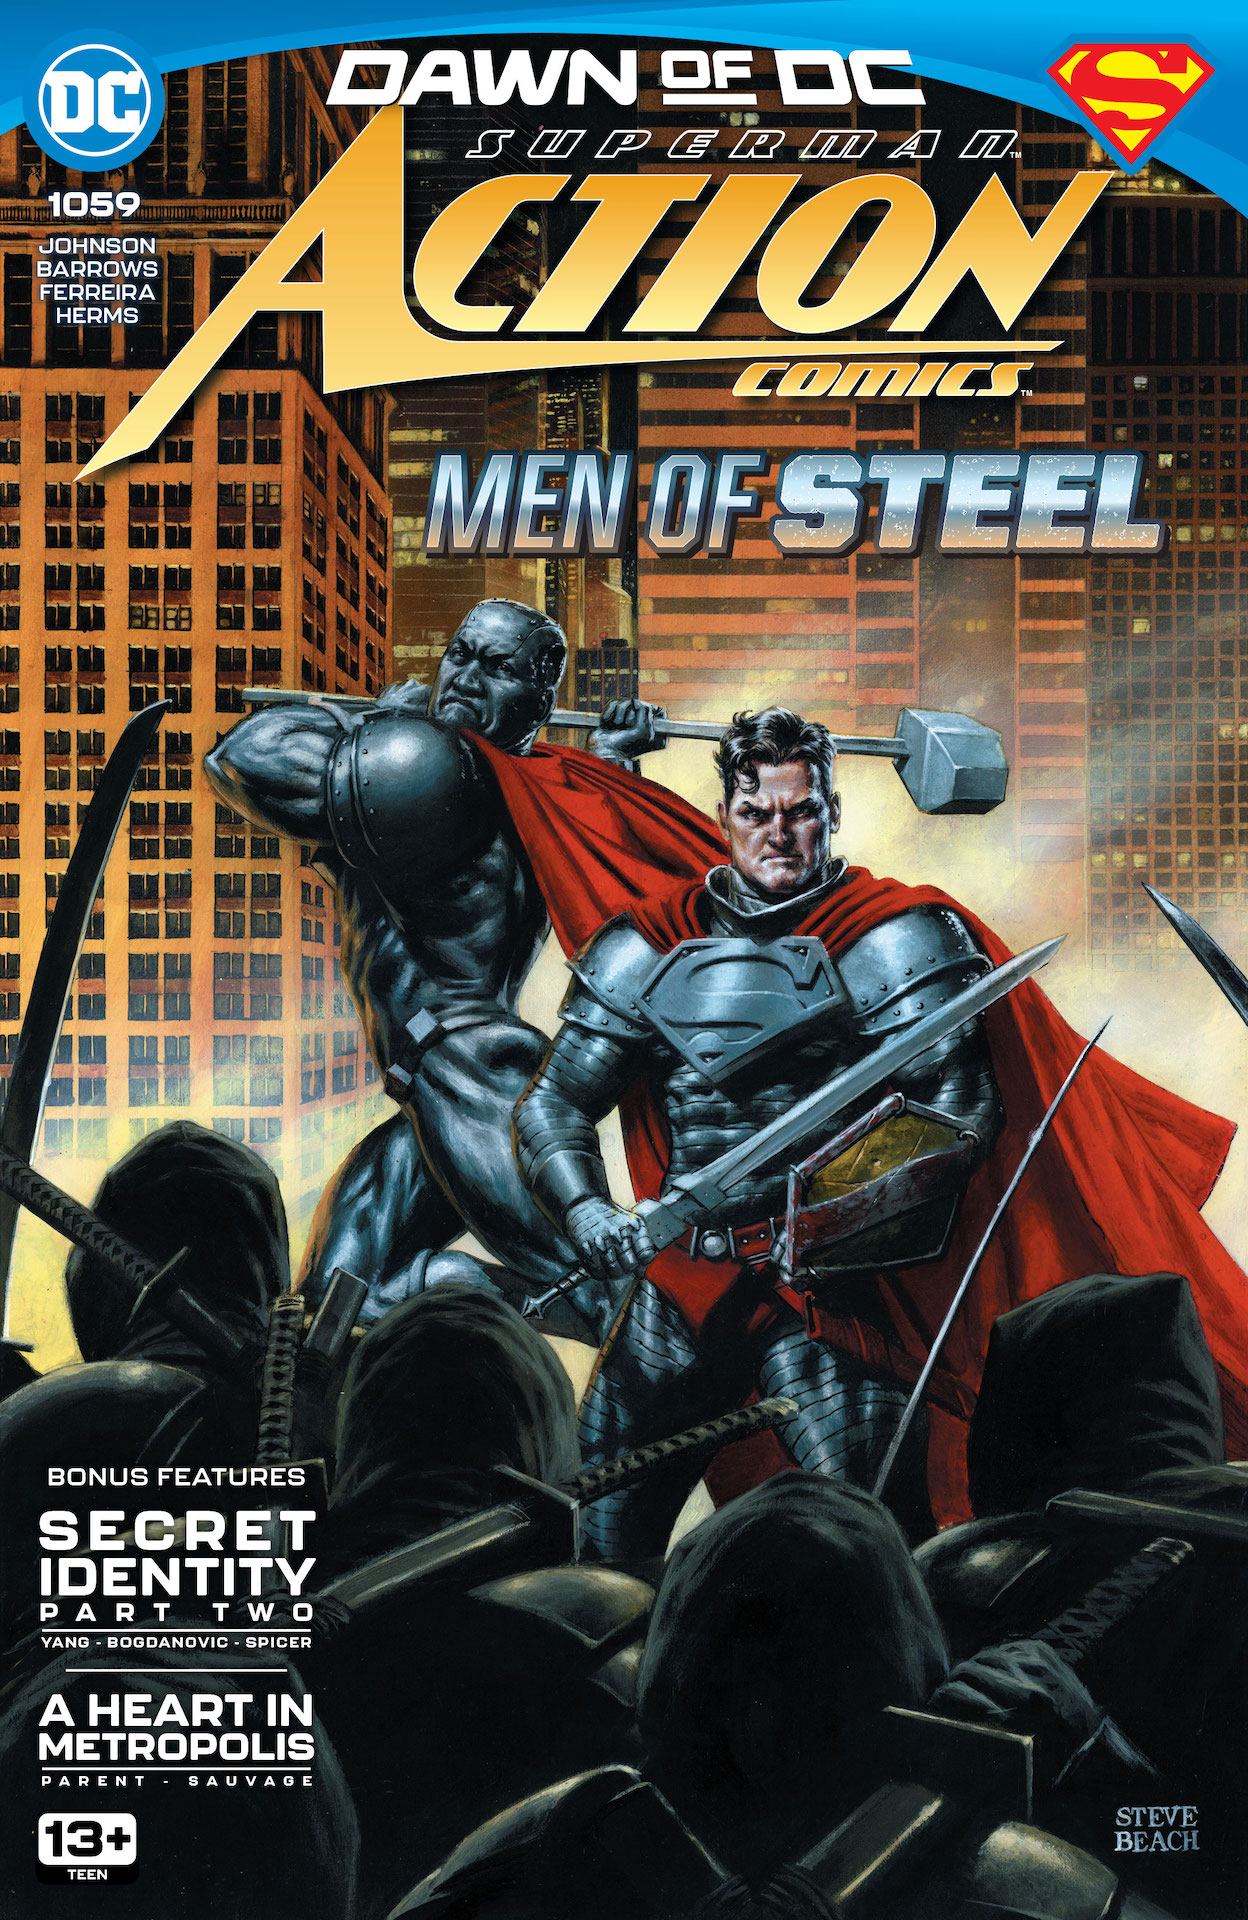 DC Preview: Action Comics #1059